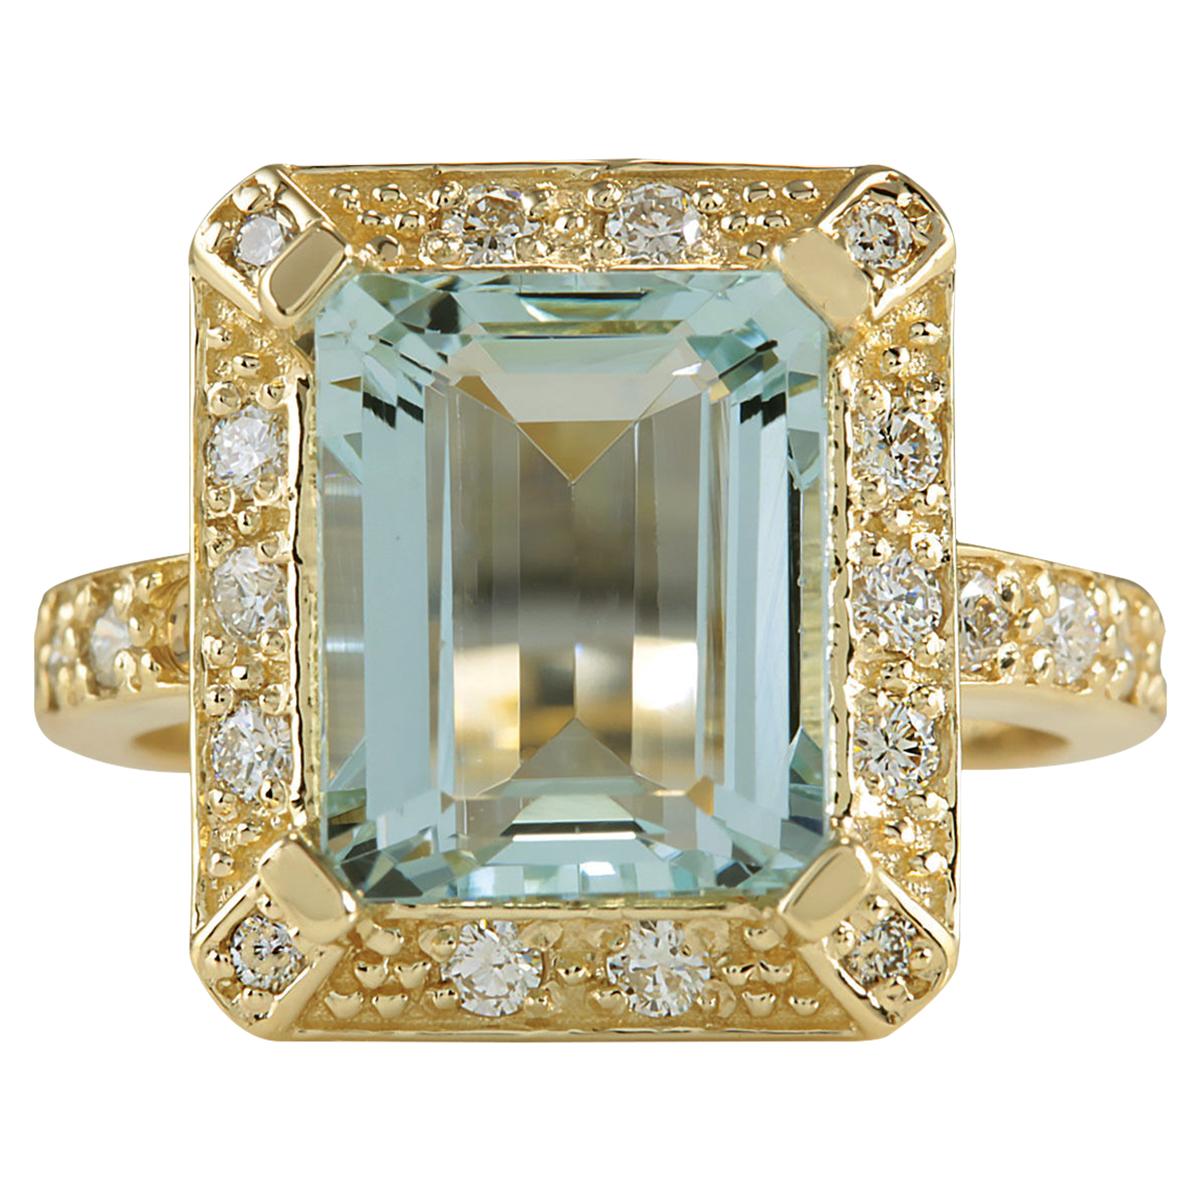 Wir präsentieren ein atemberaubendes Meisterwerk von zeitloser Schönheit - den 4,85 Karat Natur-Aquamarin 14 Karat Gelbgold Diamantring. Dieser Ring ist ein Symbol für Luxus und Raffinesse.

Dieser Ring aus 14-karätigem Gelbgold mit einem